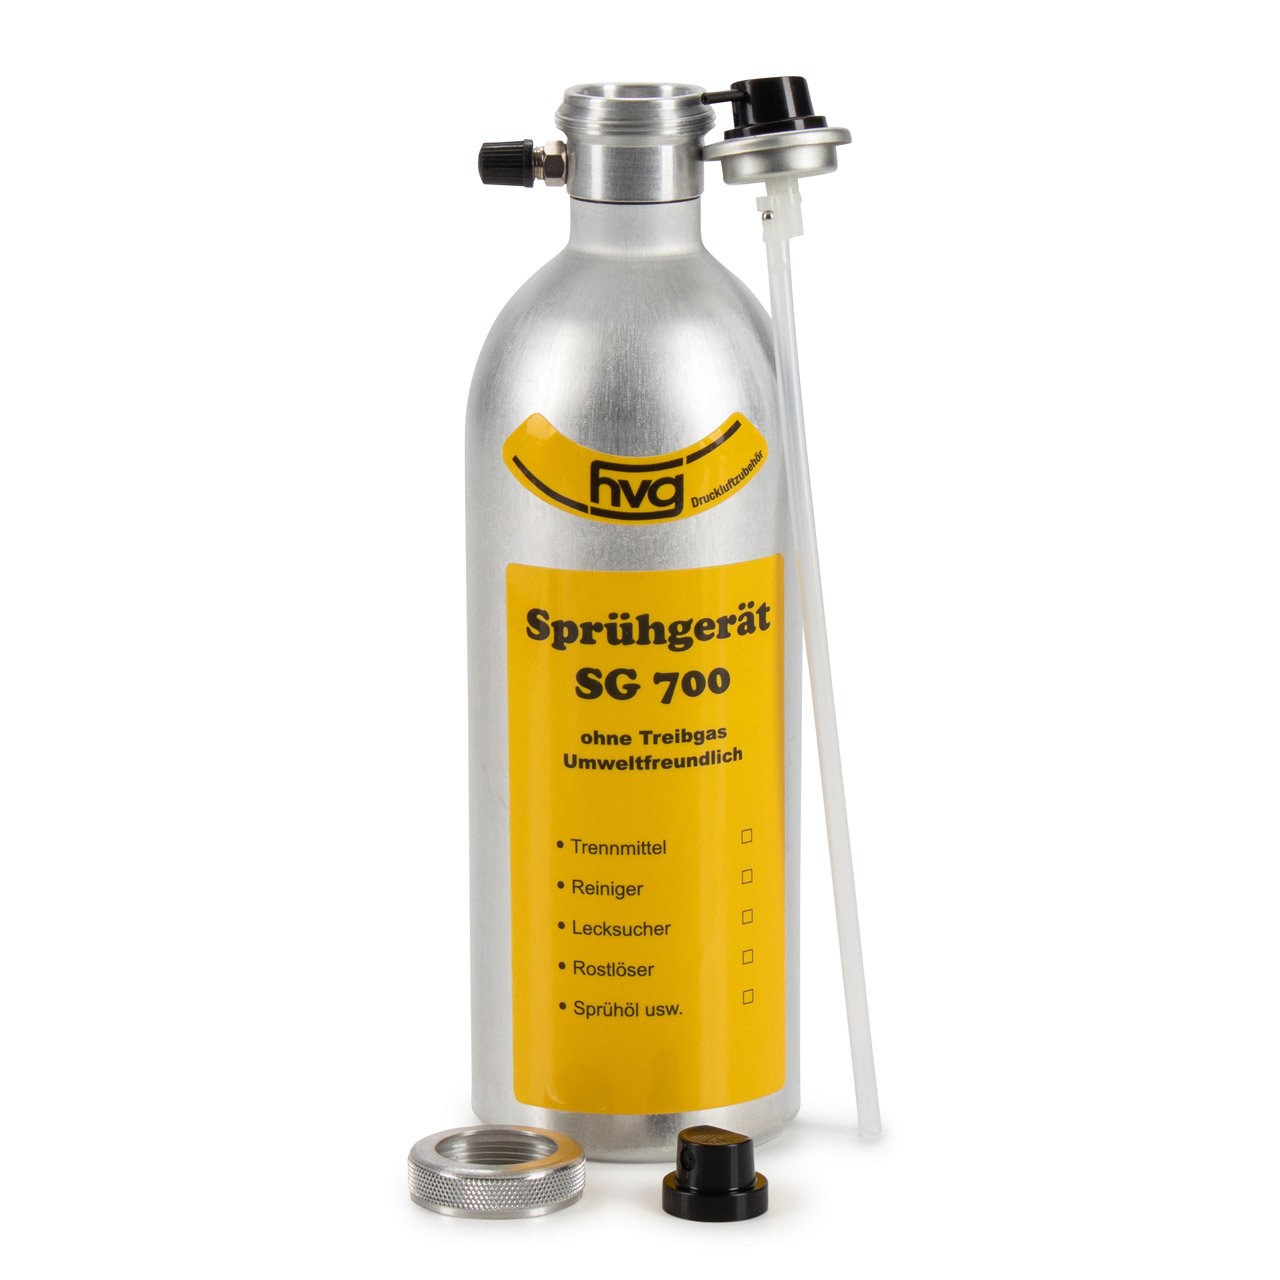 Druckluft Reiniger Spraydose 400ml einfach online kaufen